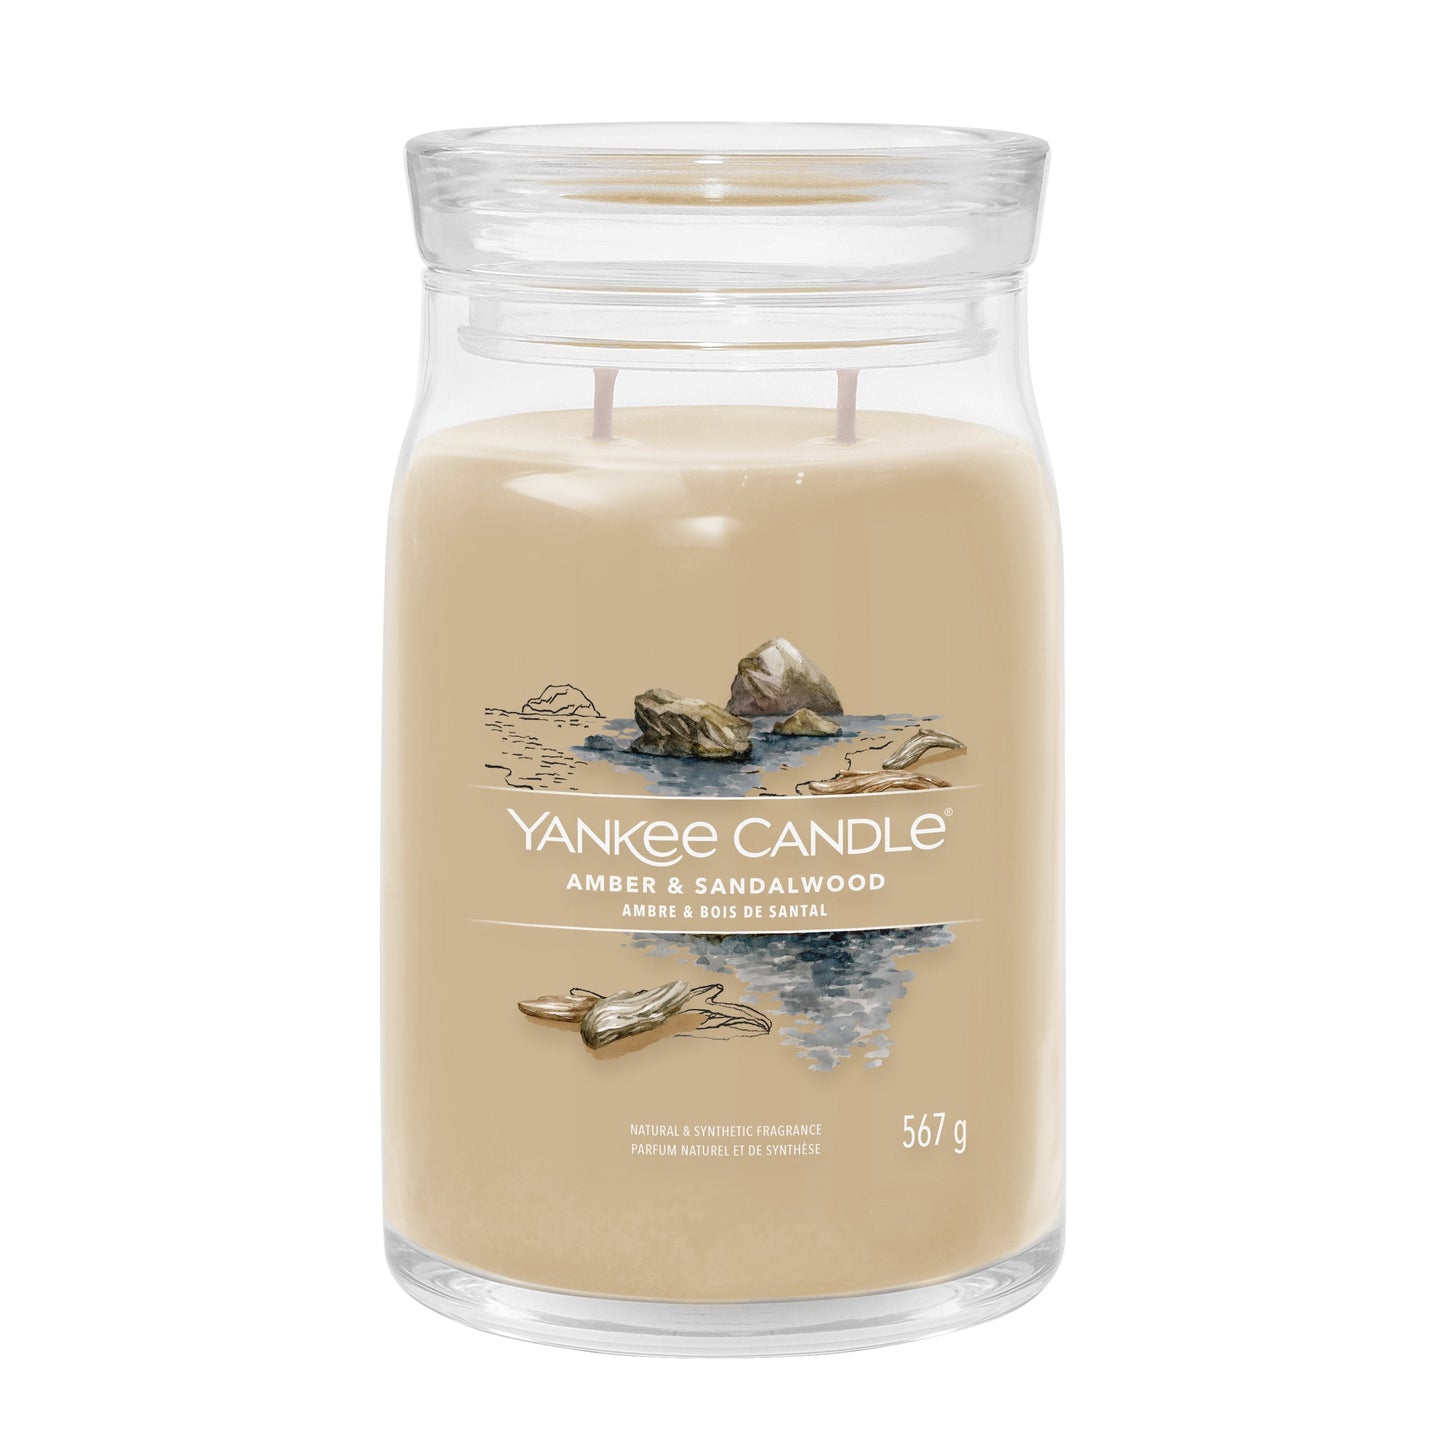 Yankee Candle Amber & Sandalwood Large Jar